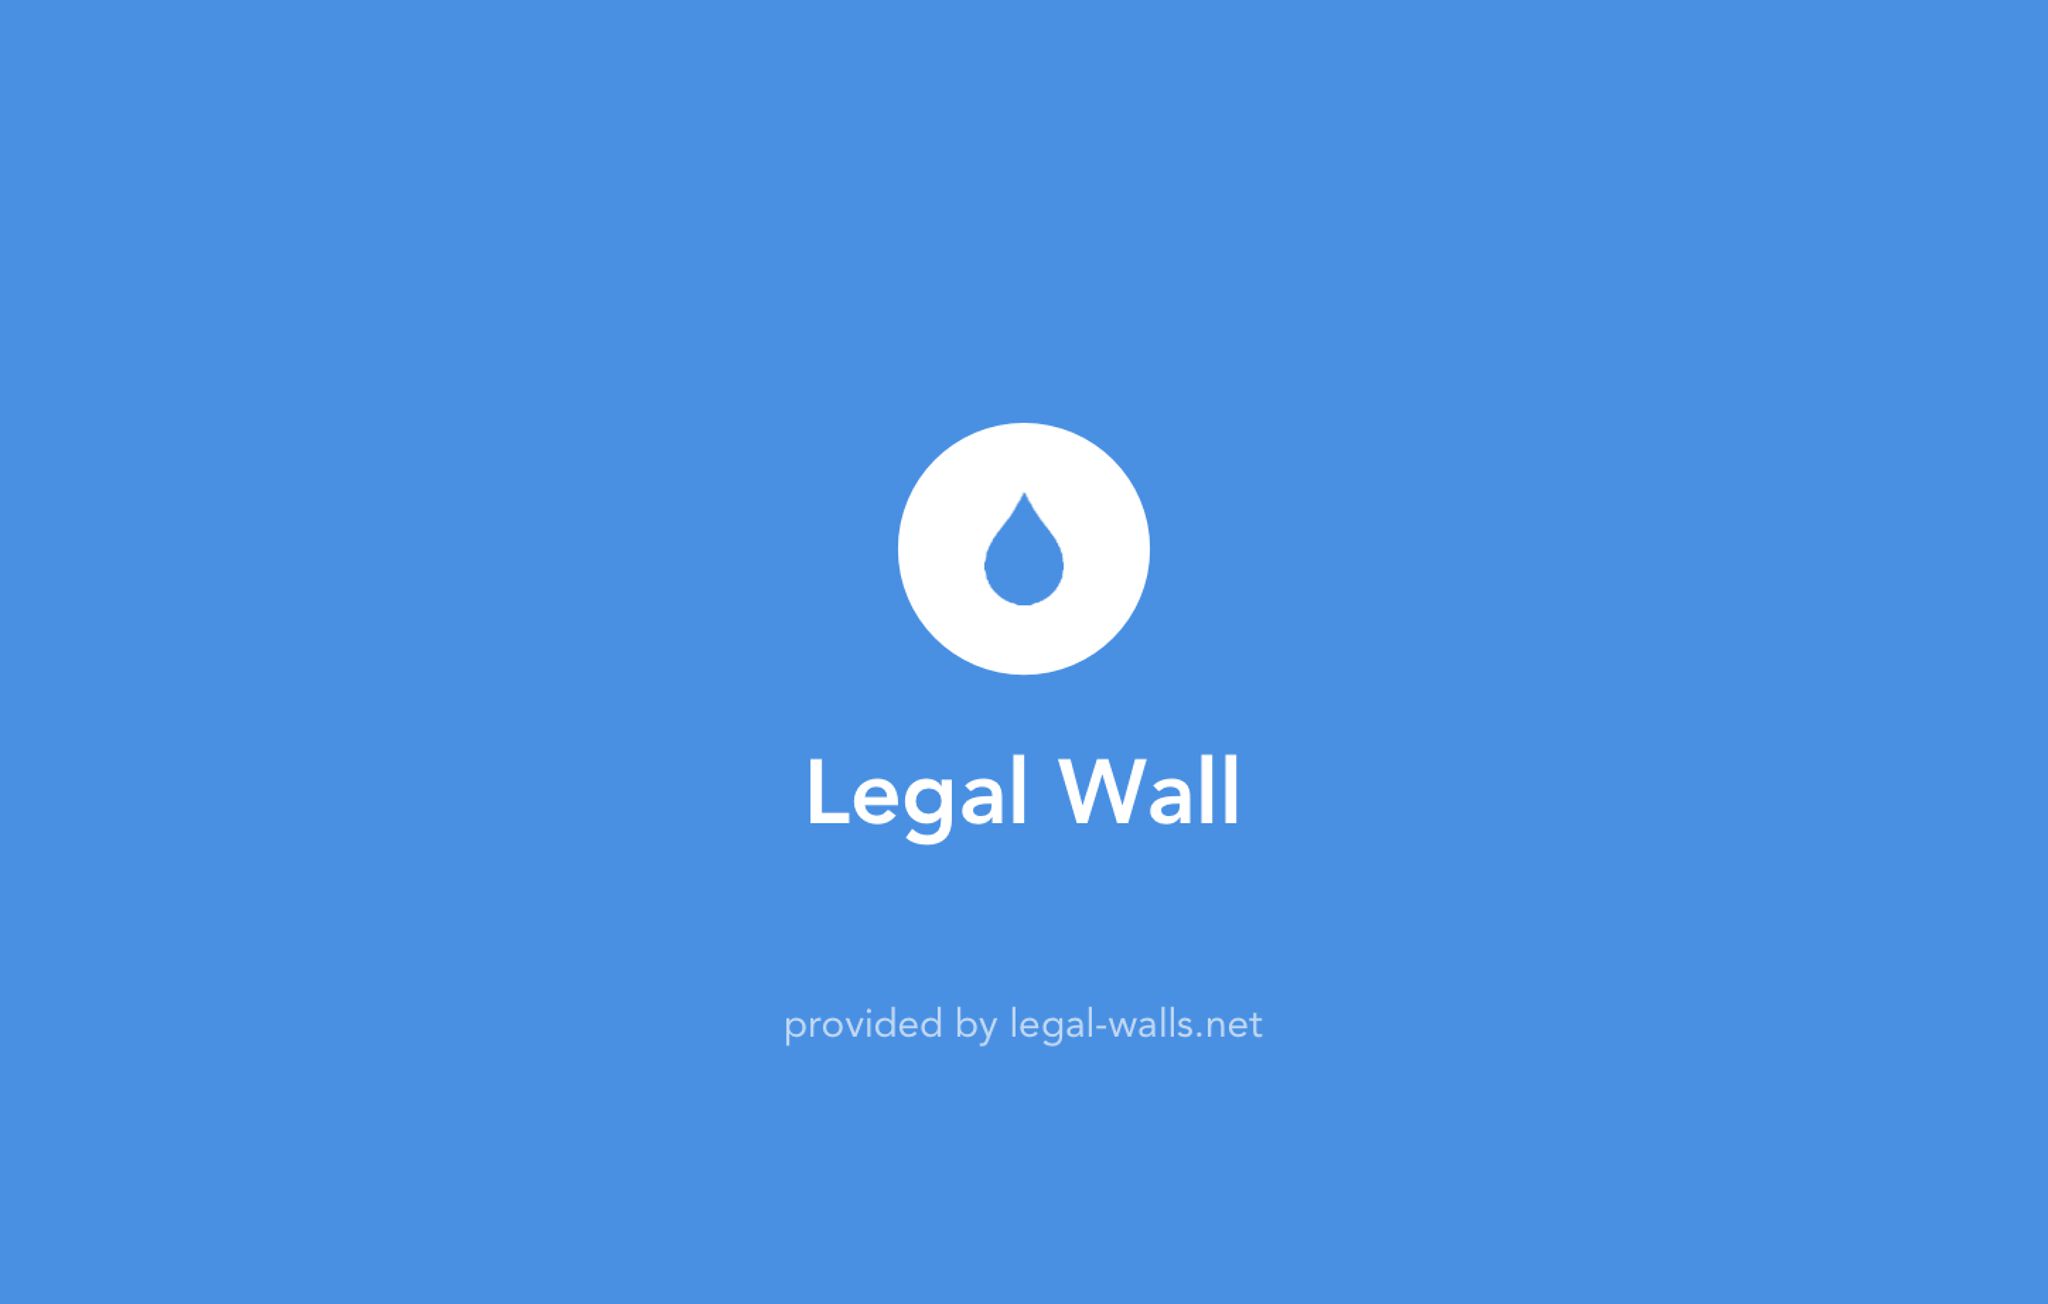 &mdash;streetwise legal wall